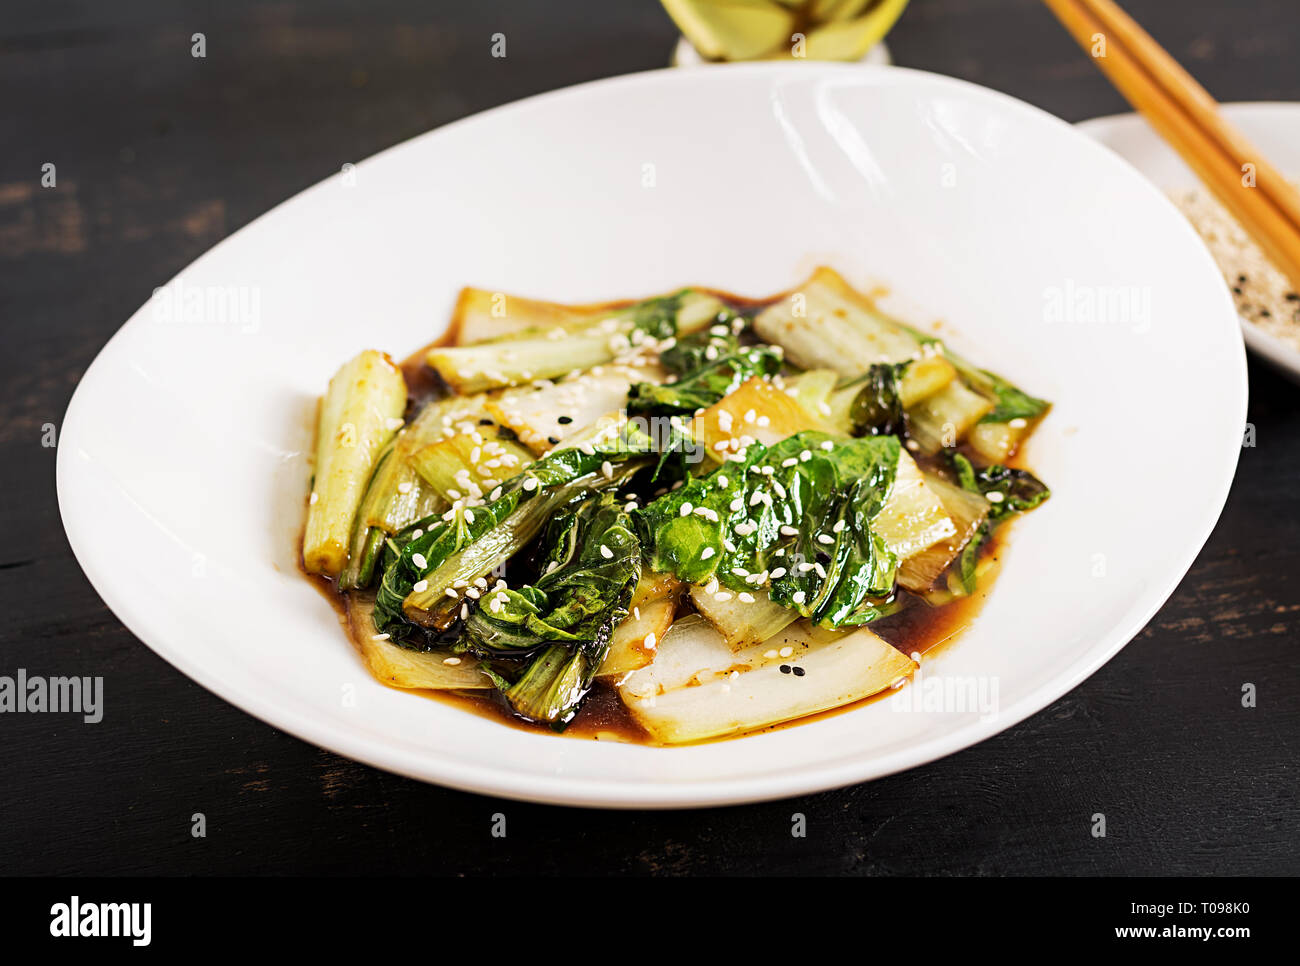 Le Bok choy sauté de légumes avec de la sauce soja et de graines de sésame. La cuisine chinoise. Banque D'Images